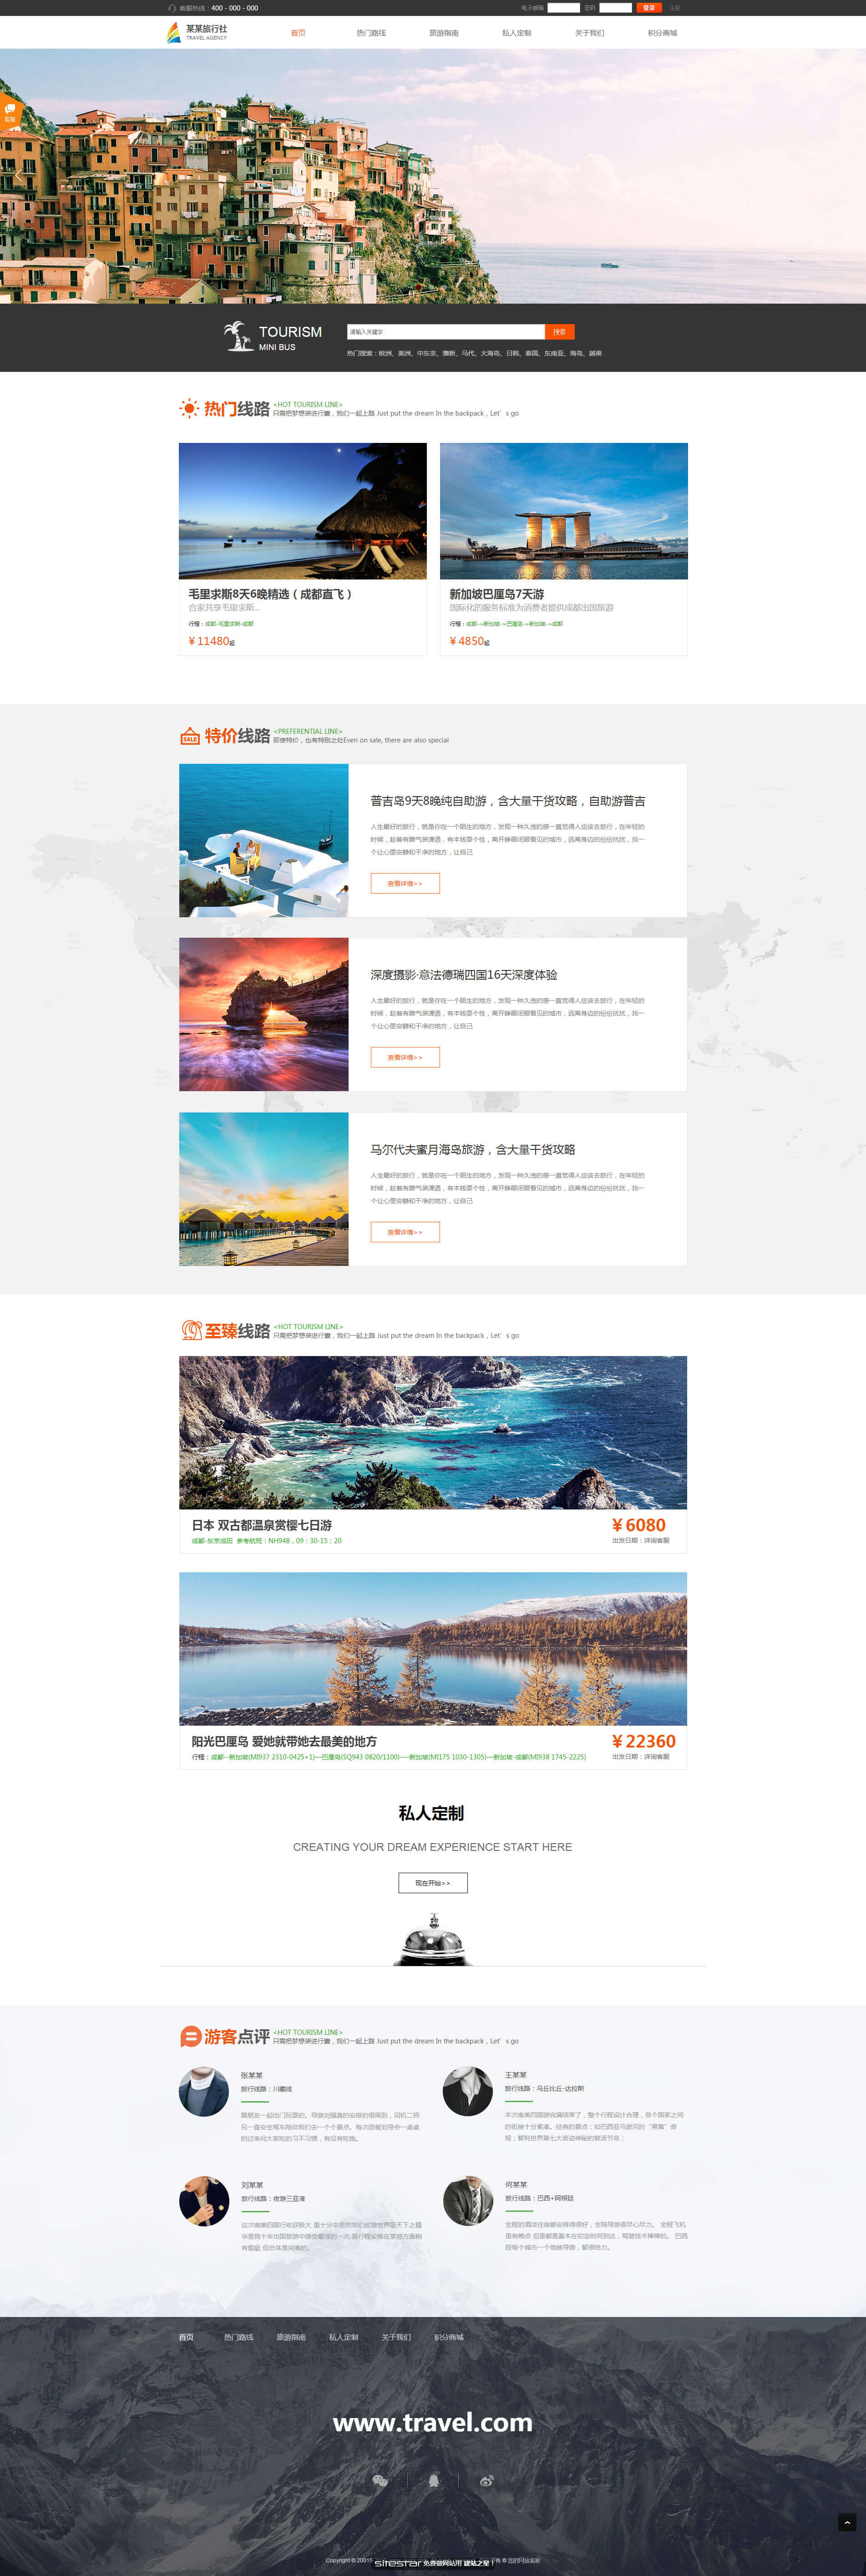 旅游、风景网站模板-travel-321